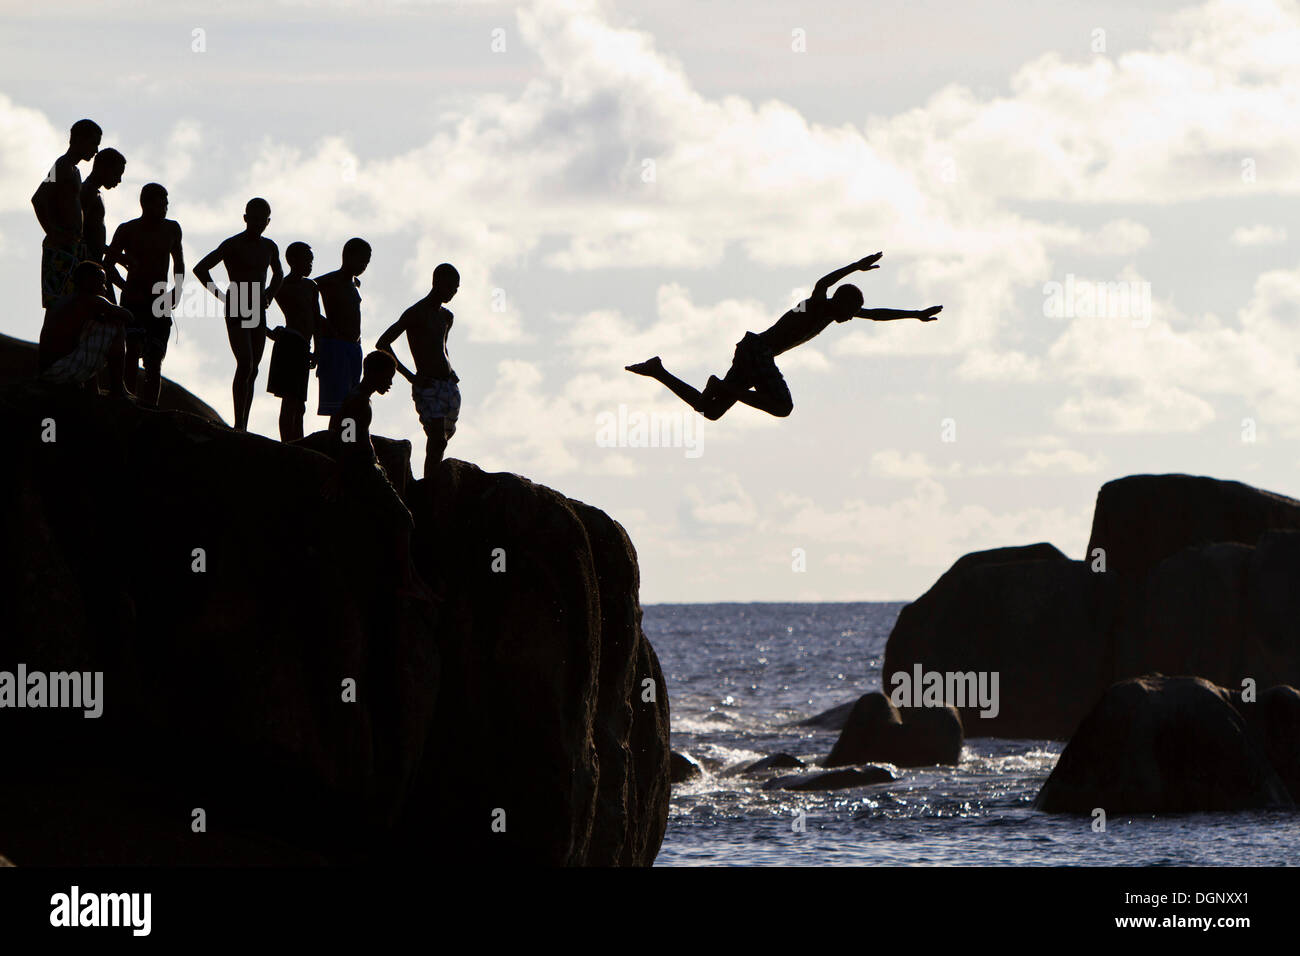 Les adolescents créole sautant de rochers, silhouettes, Mahé, Seychelles, Afrique, Océan Indien Banque D'Images